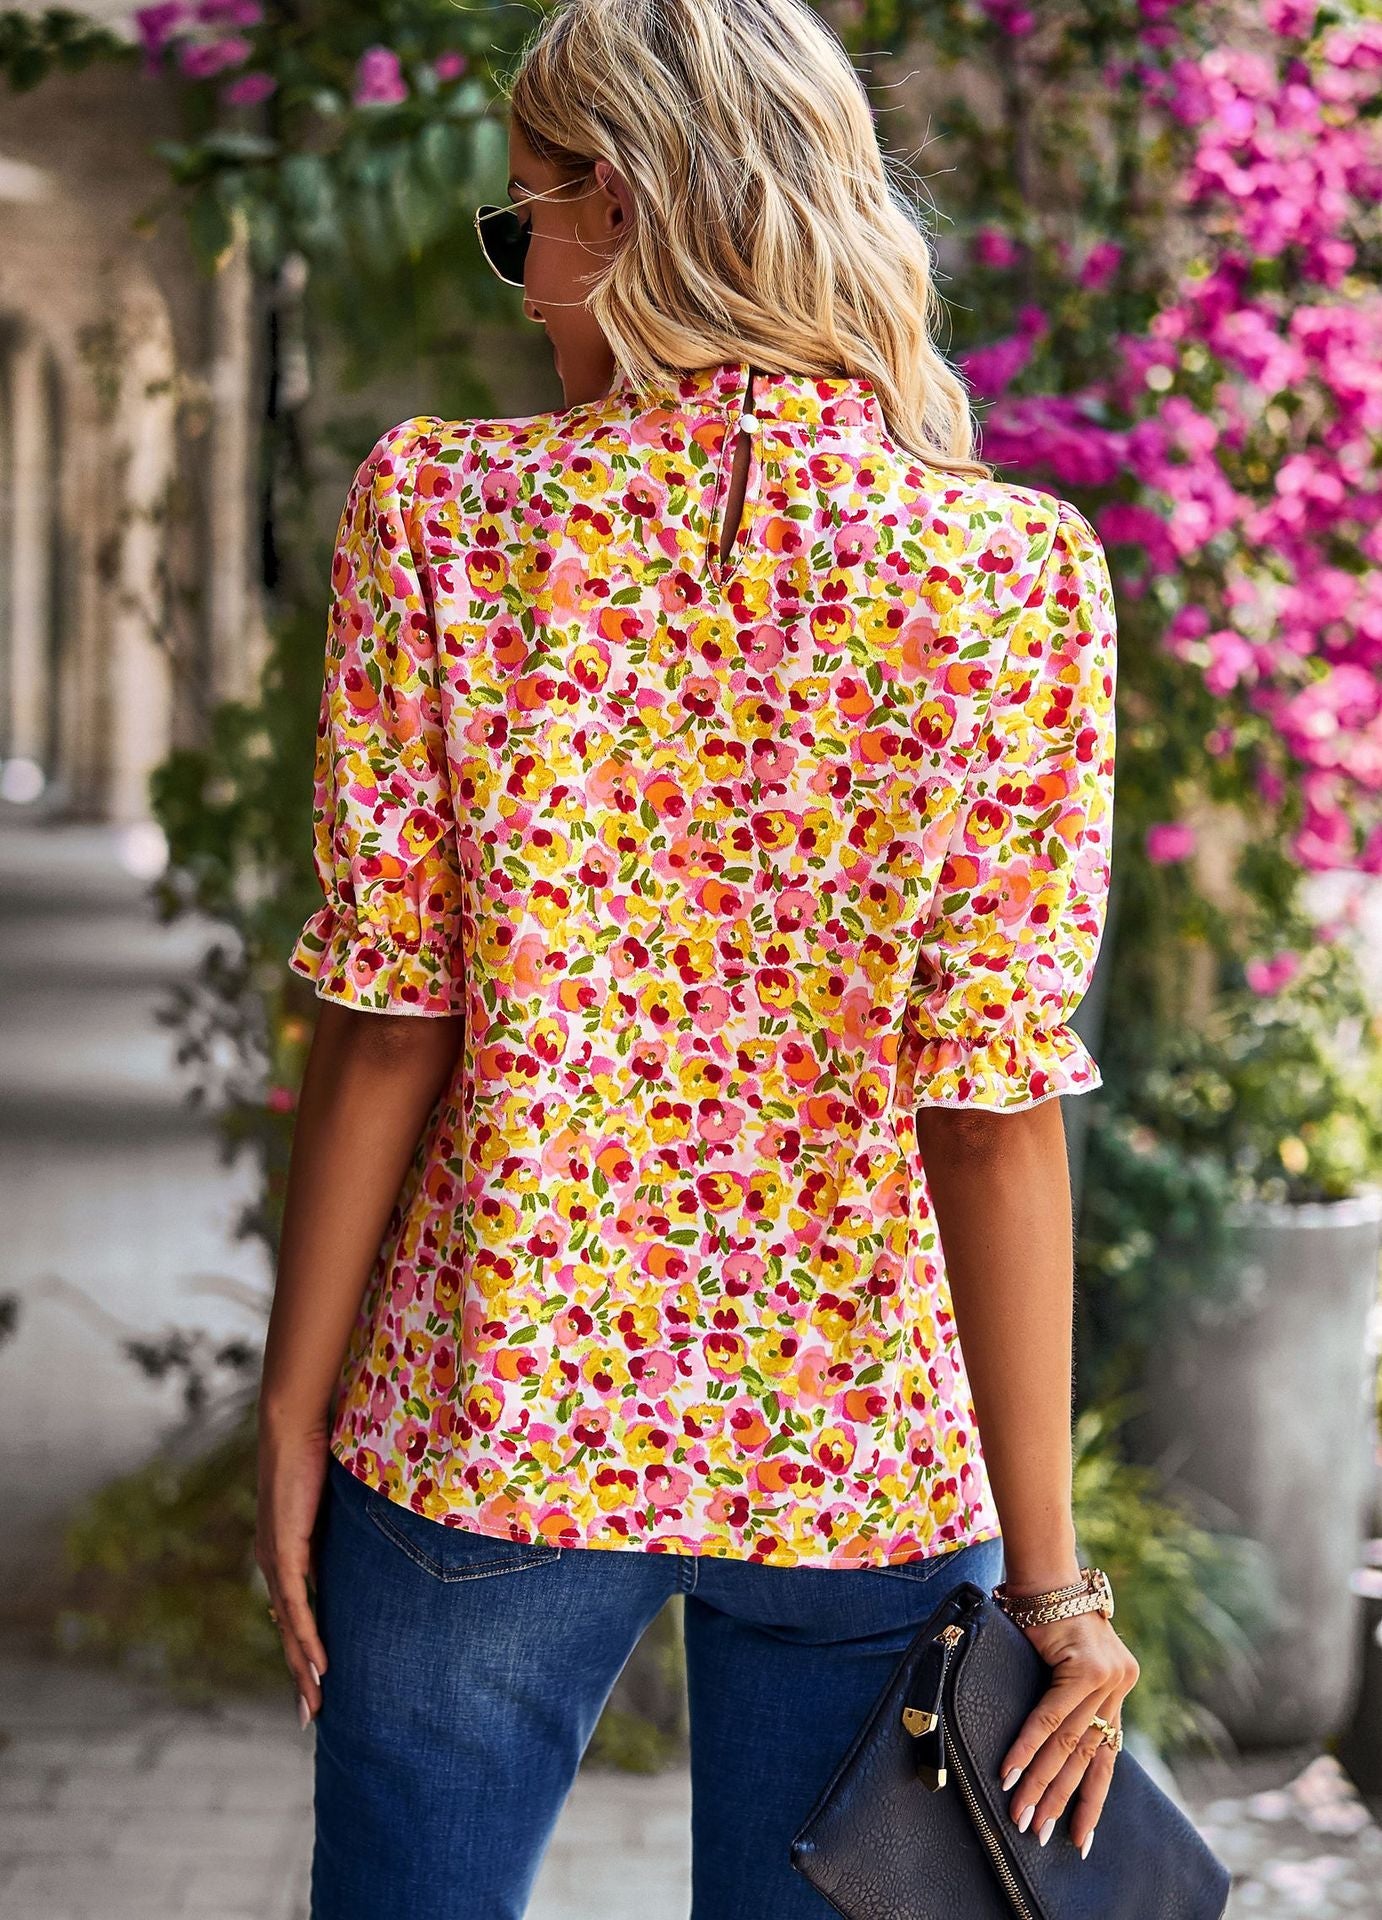 Designed Summer Half Sleeves Blouses for Women